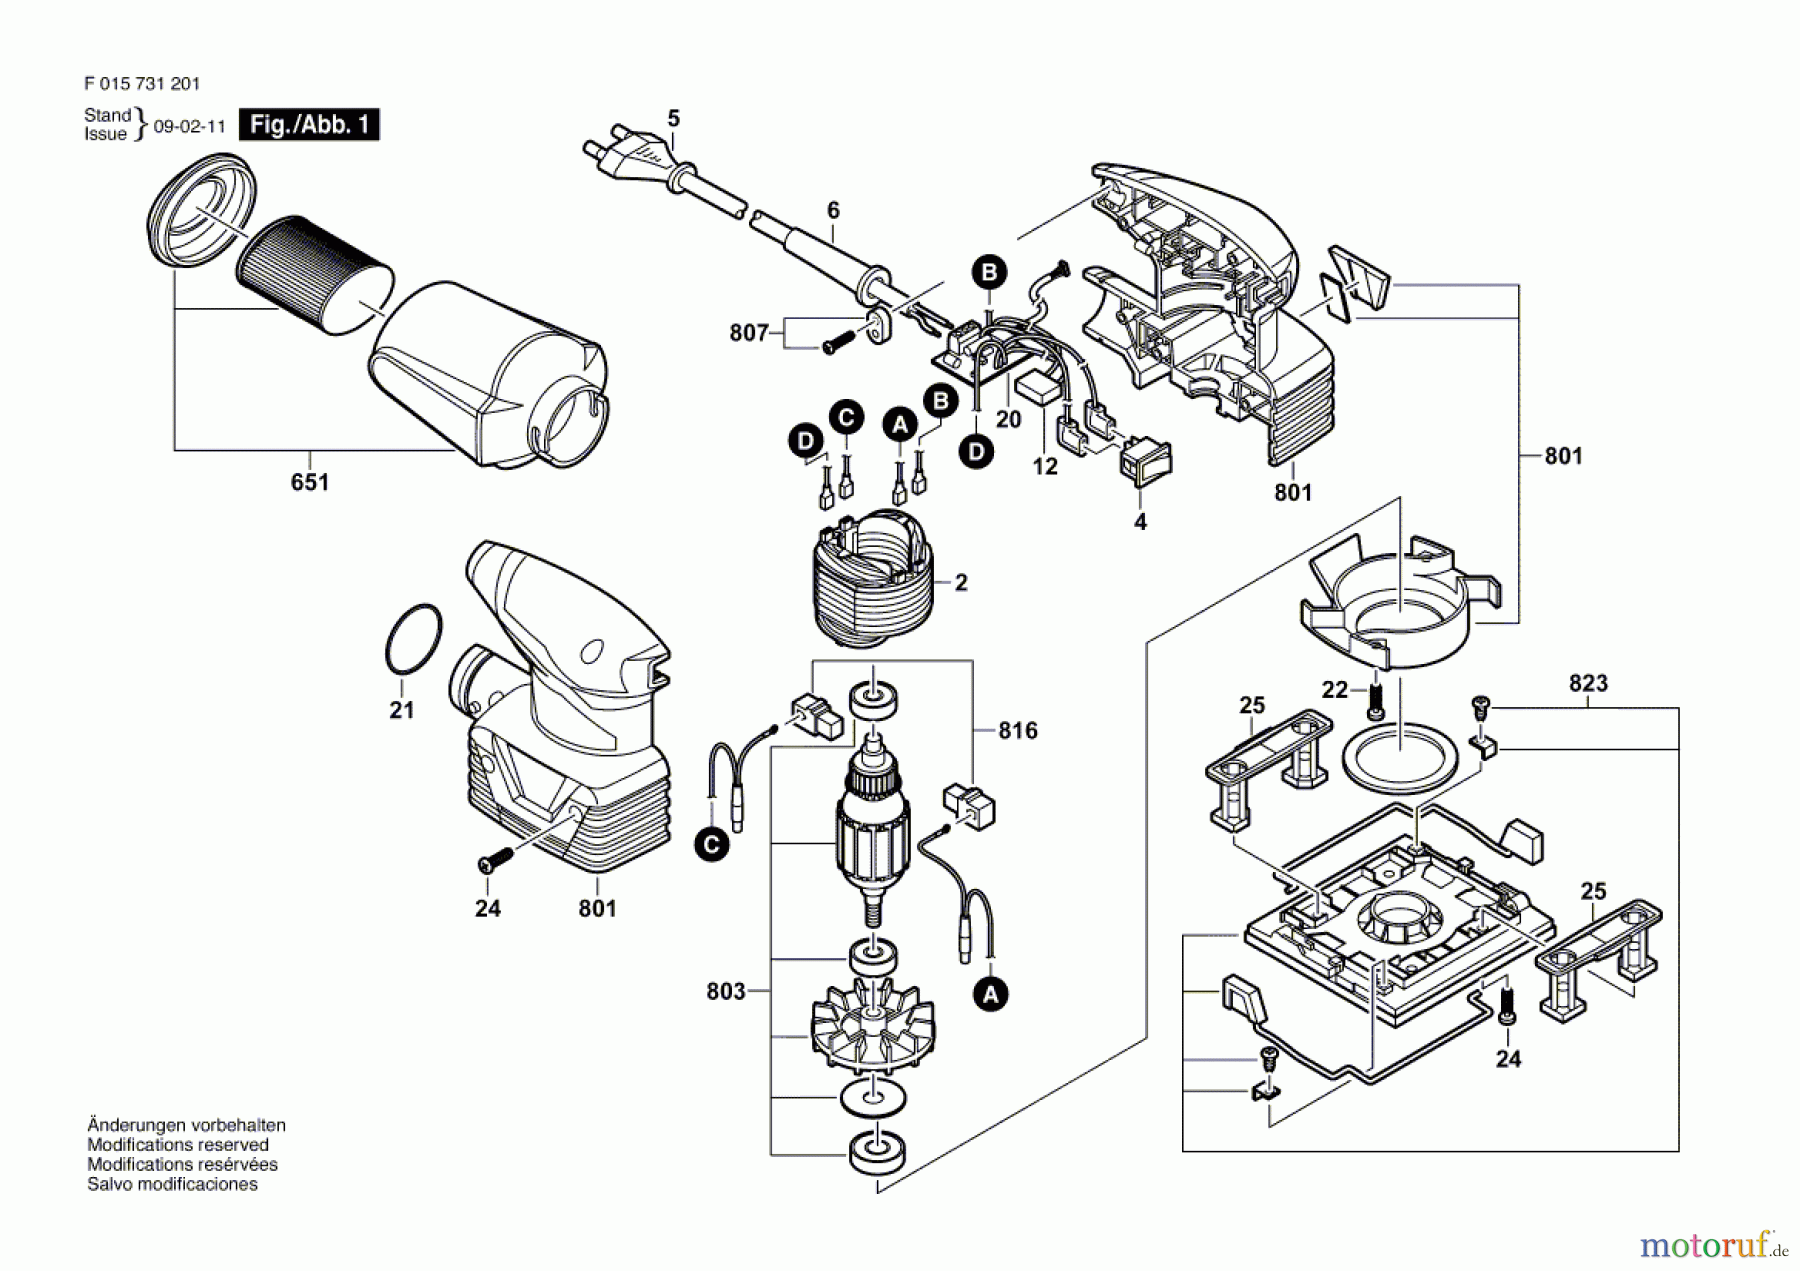  Bosch Werkzeug Schwingschleifer 7312 Seite 1